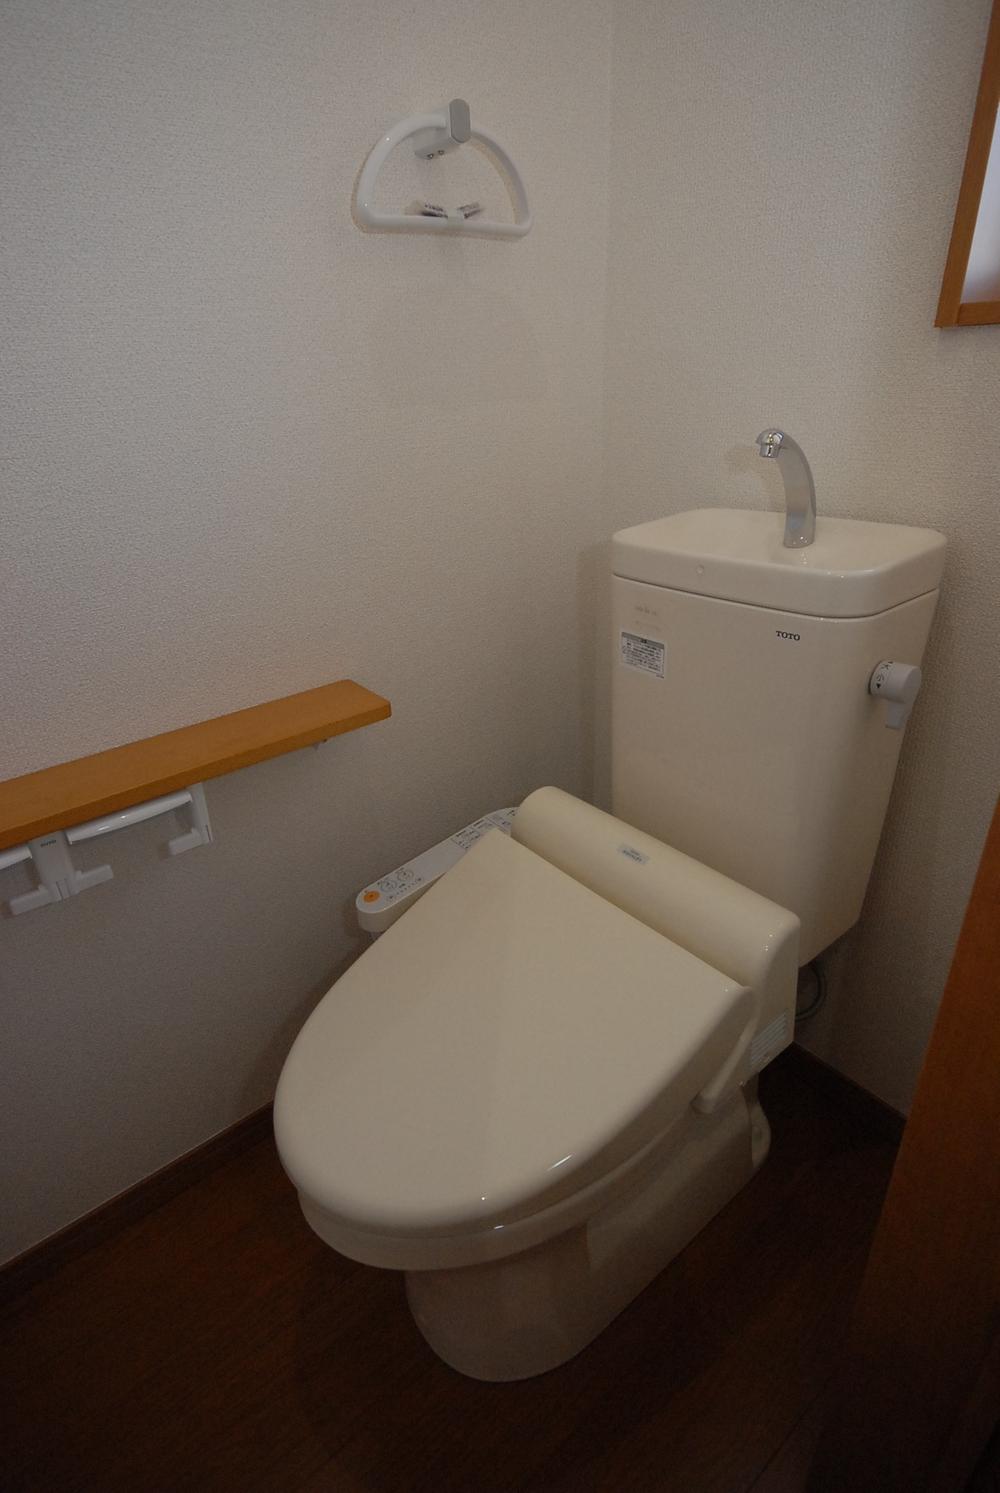 Toilet. Past construction cases